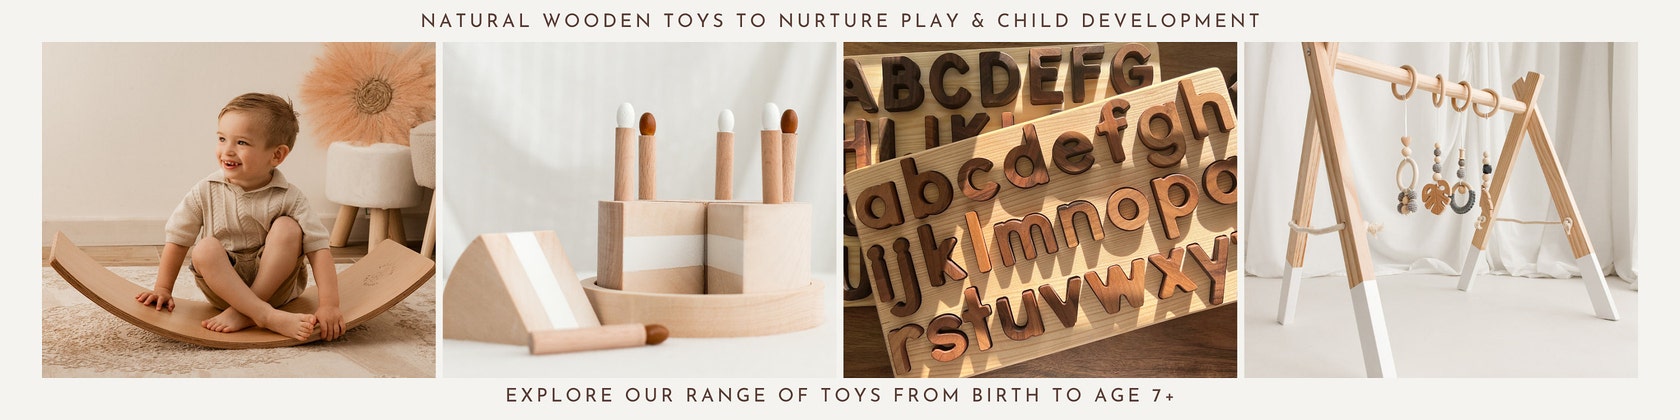 Ideas originales de regalos para niños y niñas de 4 años. Curiosite